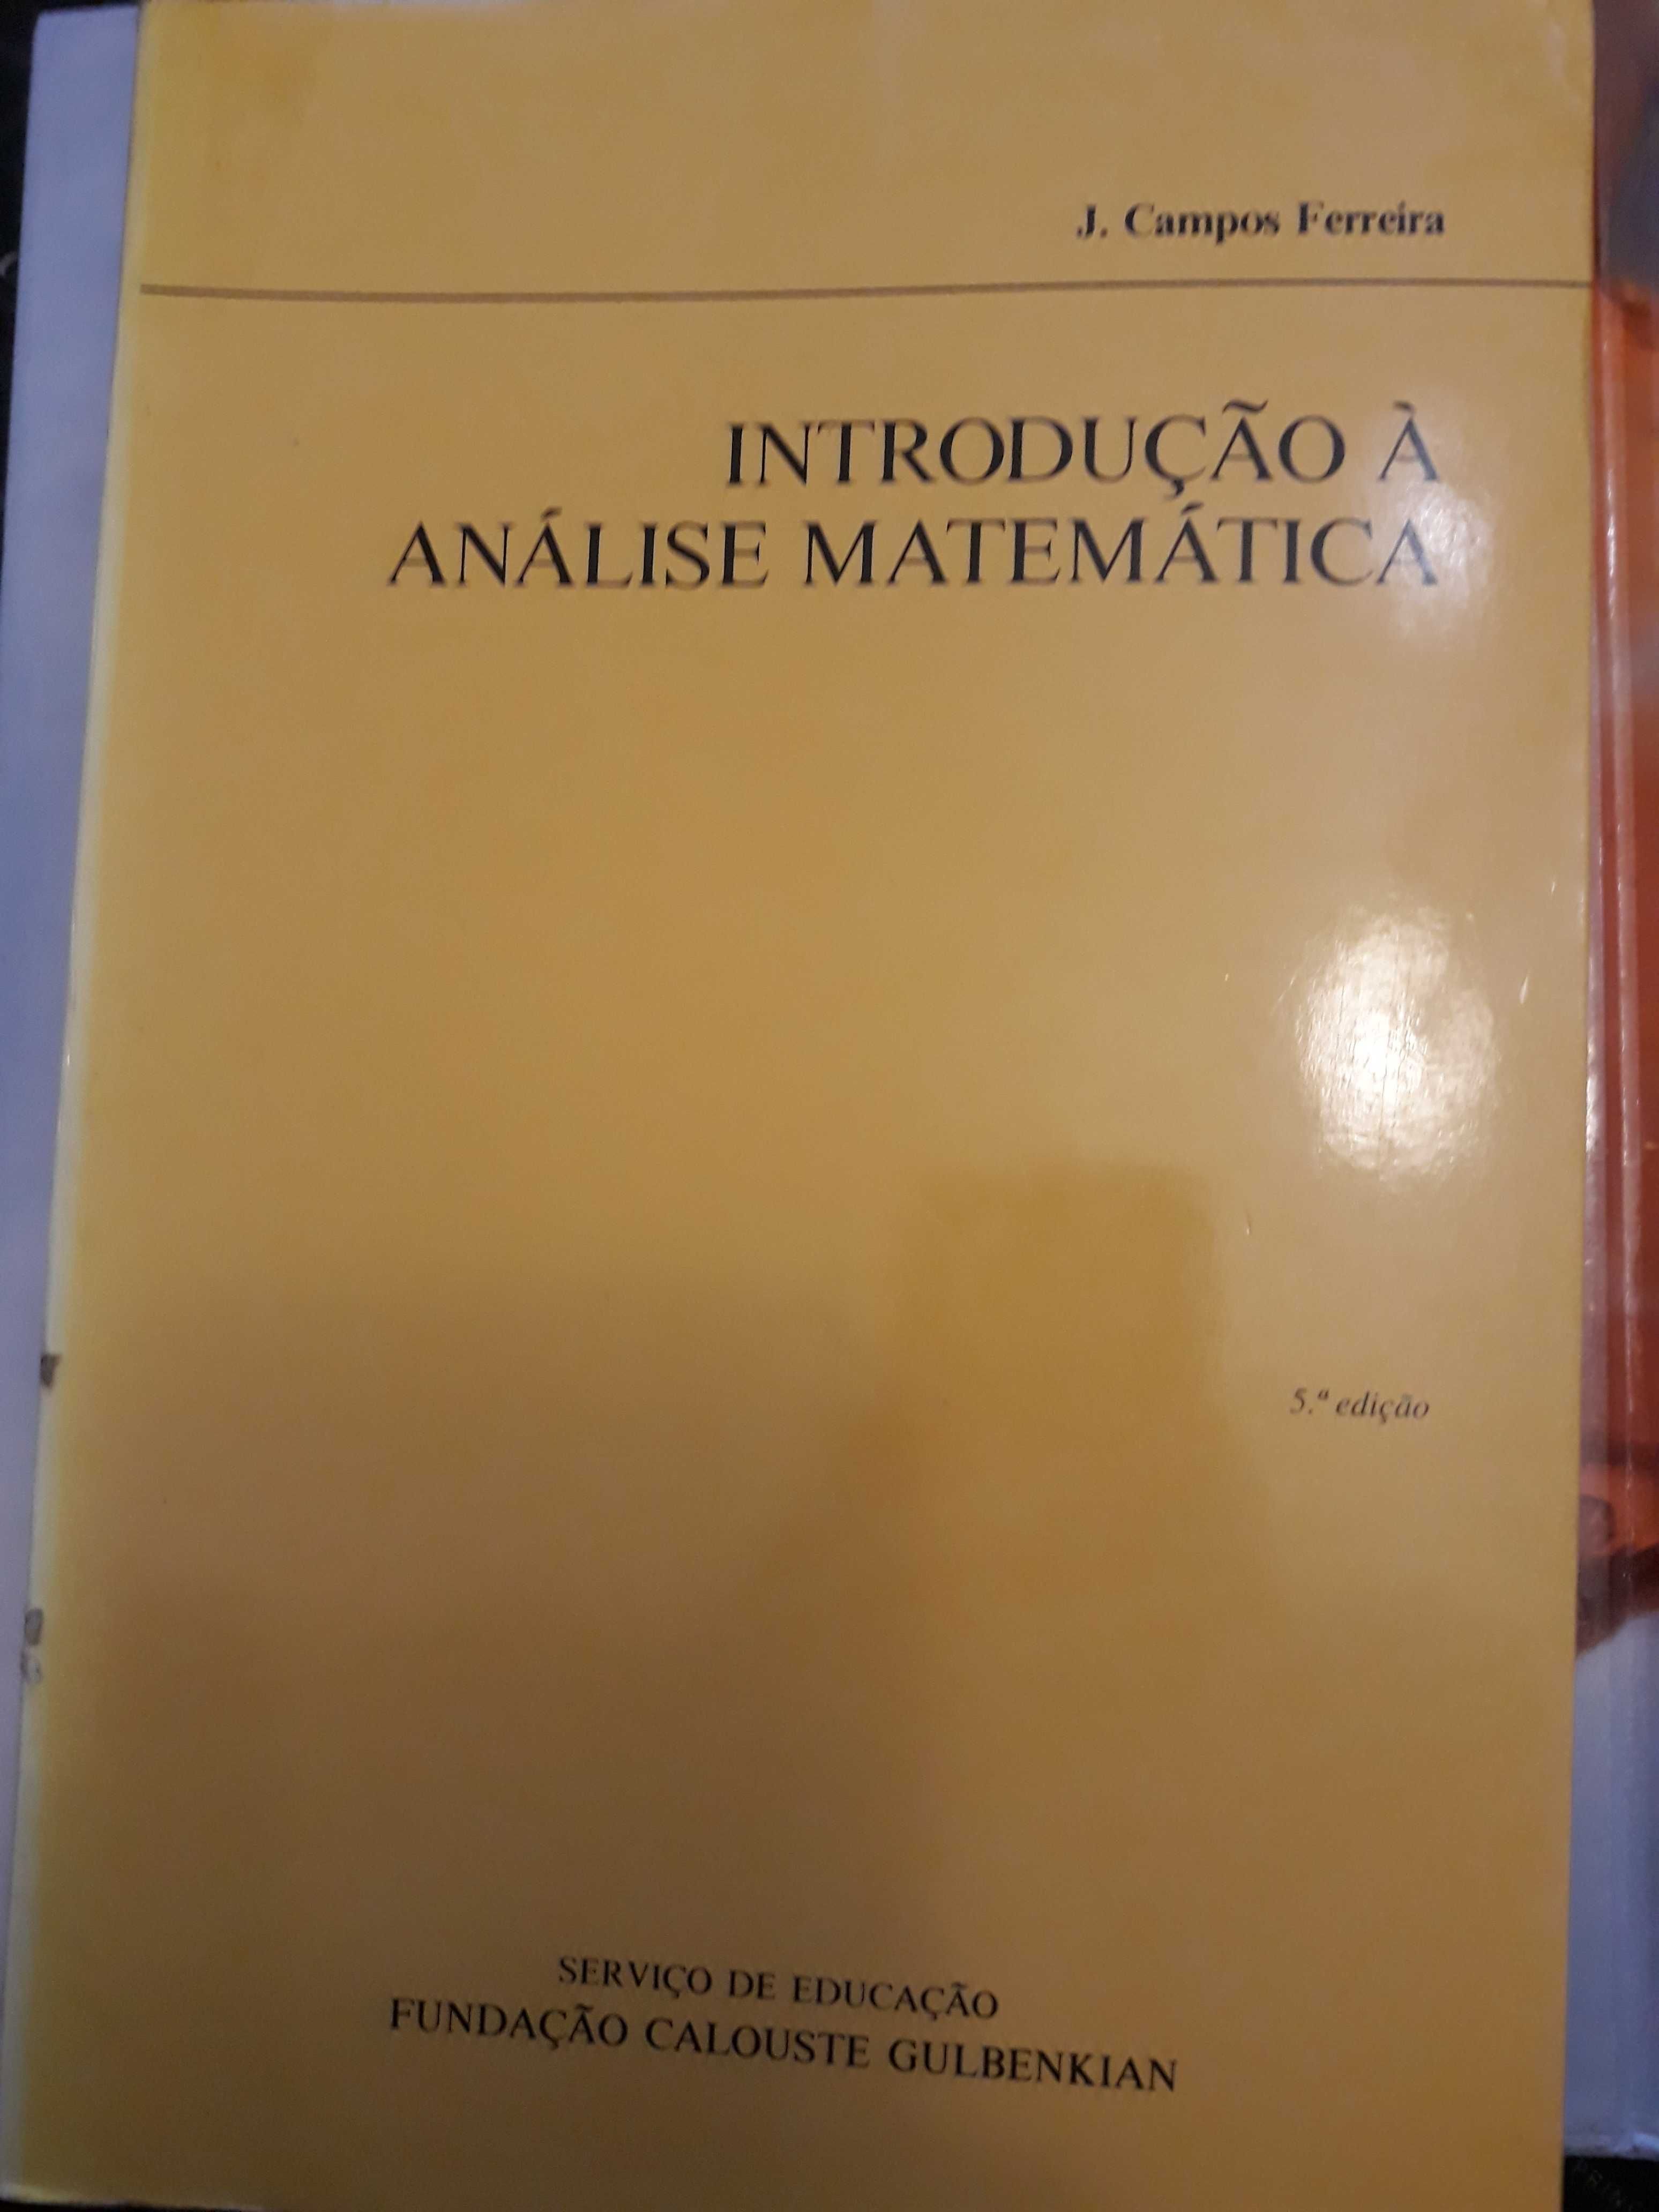 Livro de Análise Matemática